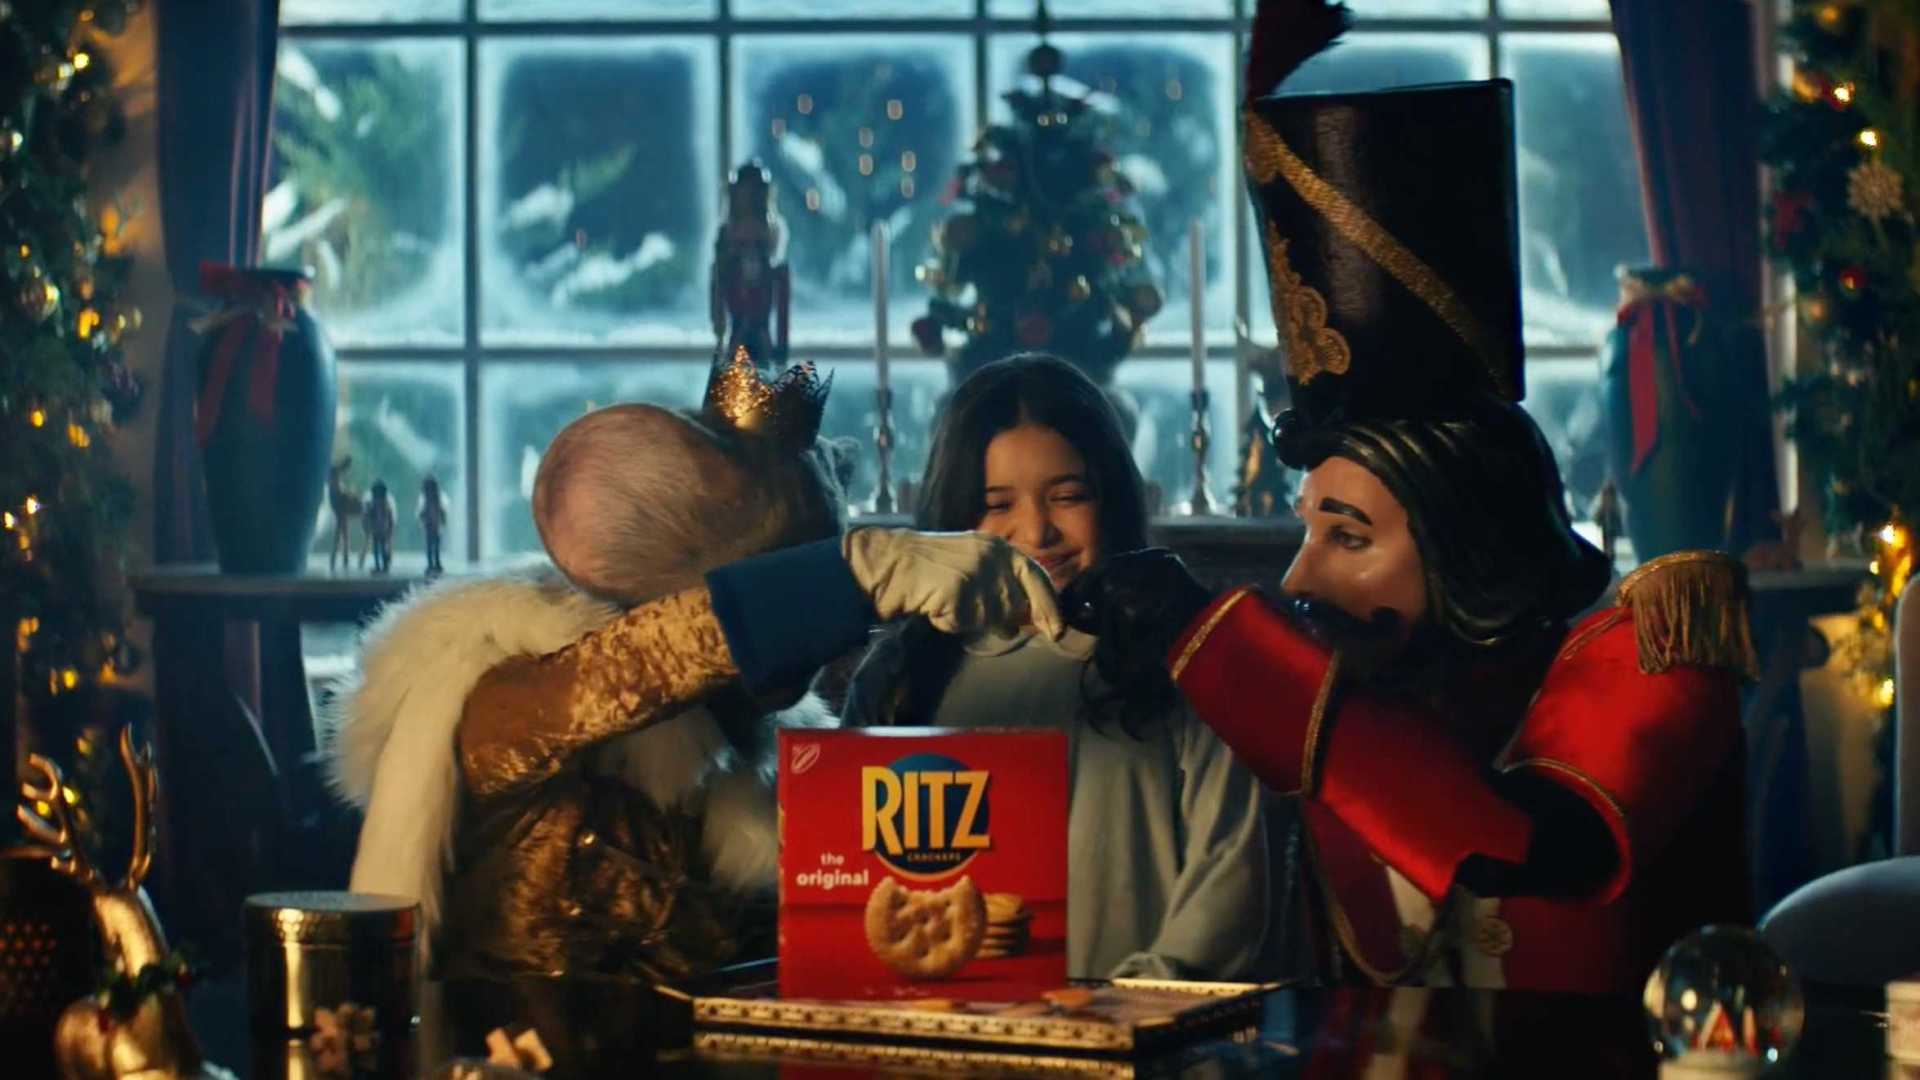 一块饼干的魅力！RITZ饼干圣诞脑洞创意广告